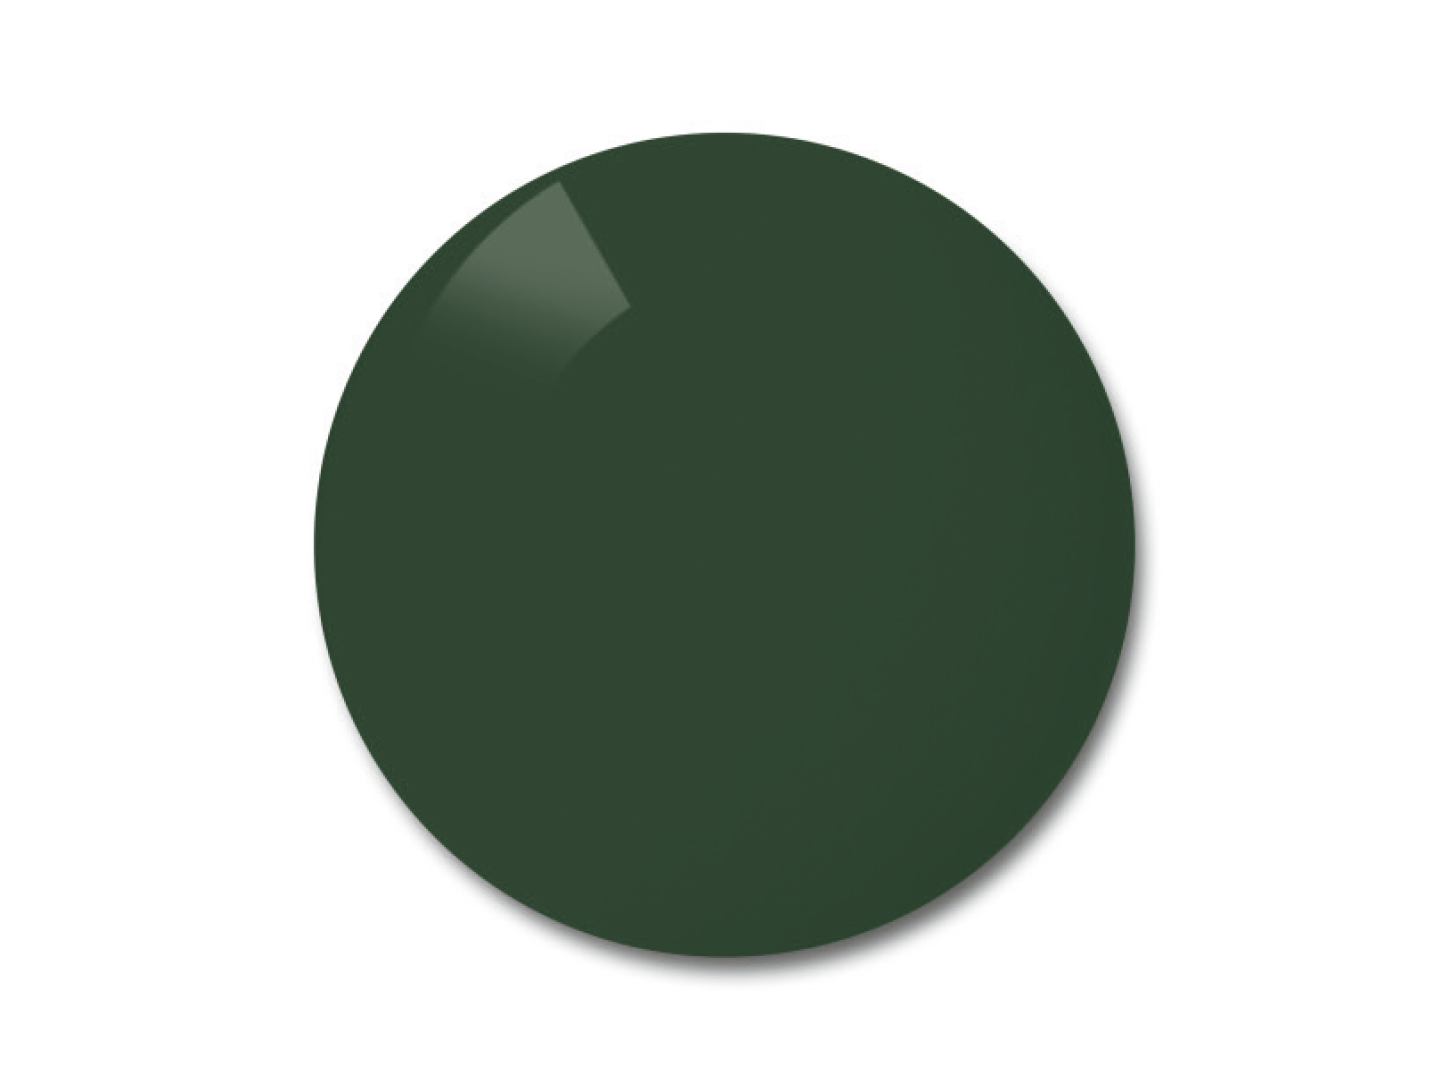 Приклад кольору для поляризованих лінз рioneer (сіро-зелених).